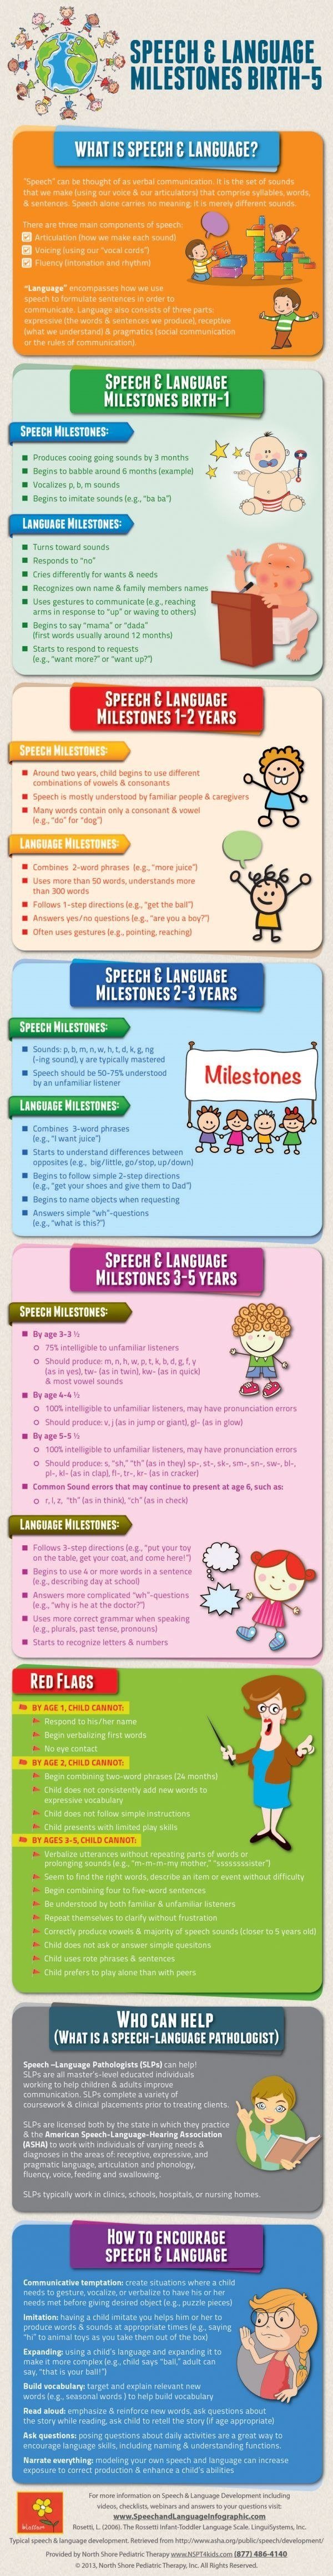 language milestones